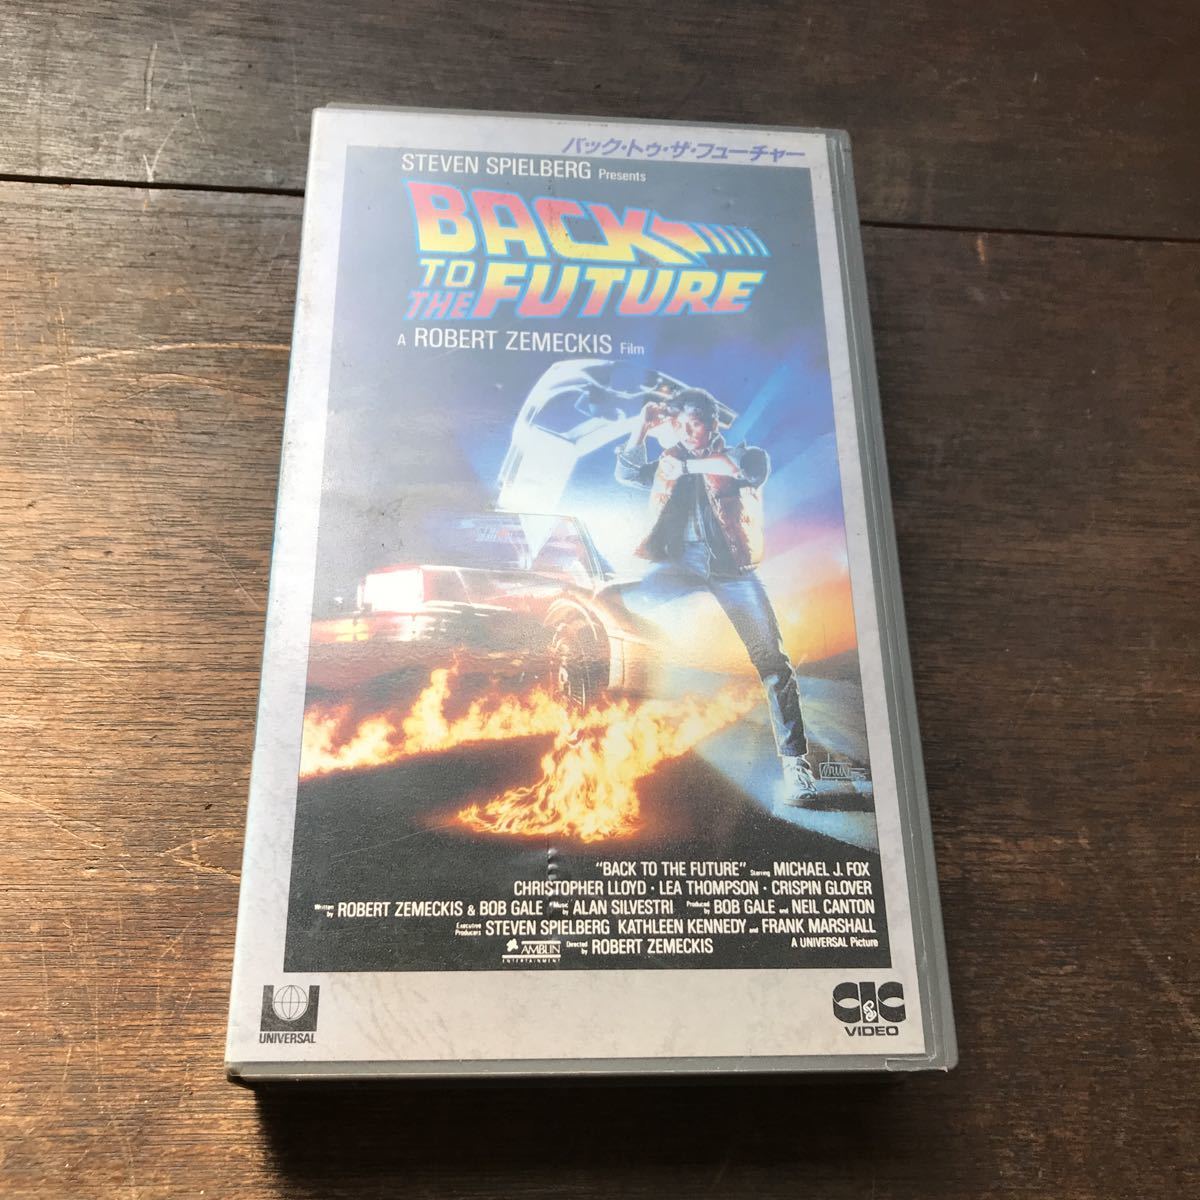  задний *tu* The * Future VHS субтитры super постановка Robert *zeme Kiss Uni va- обезьяна фильм 1985 отчетный год красный temi-.